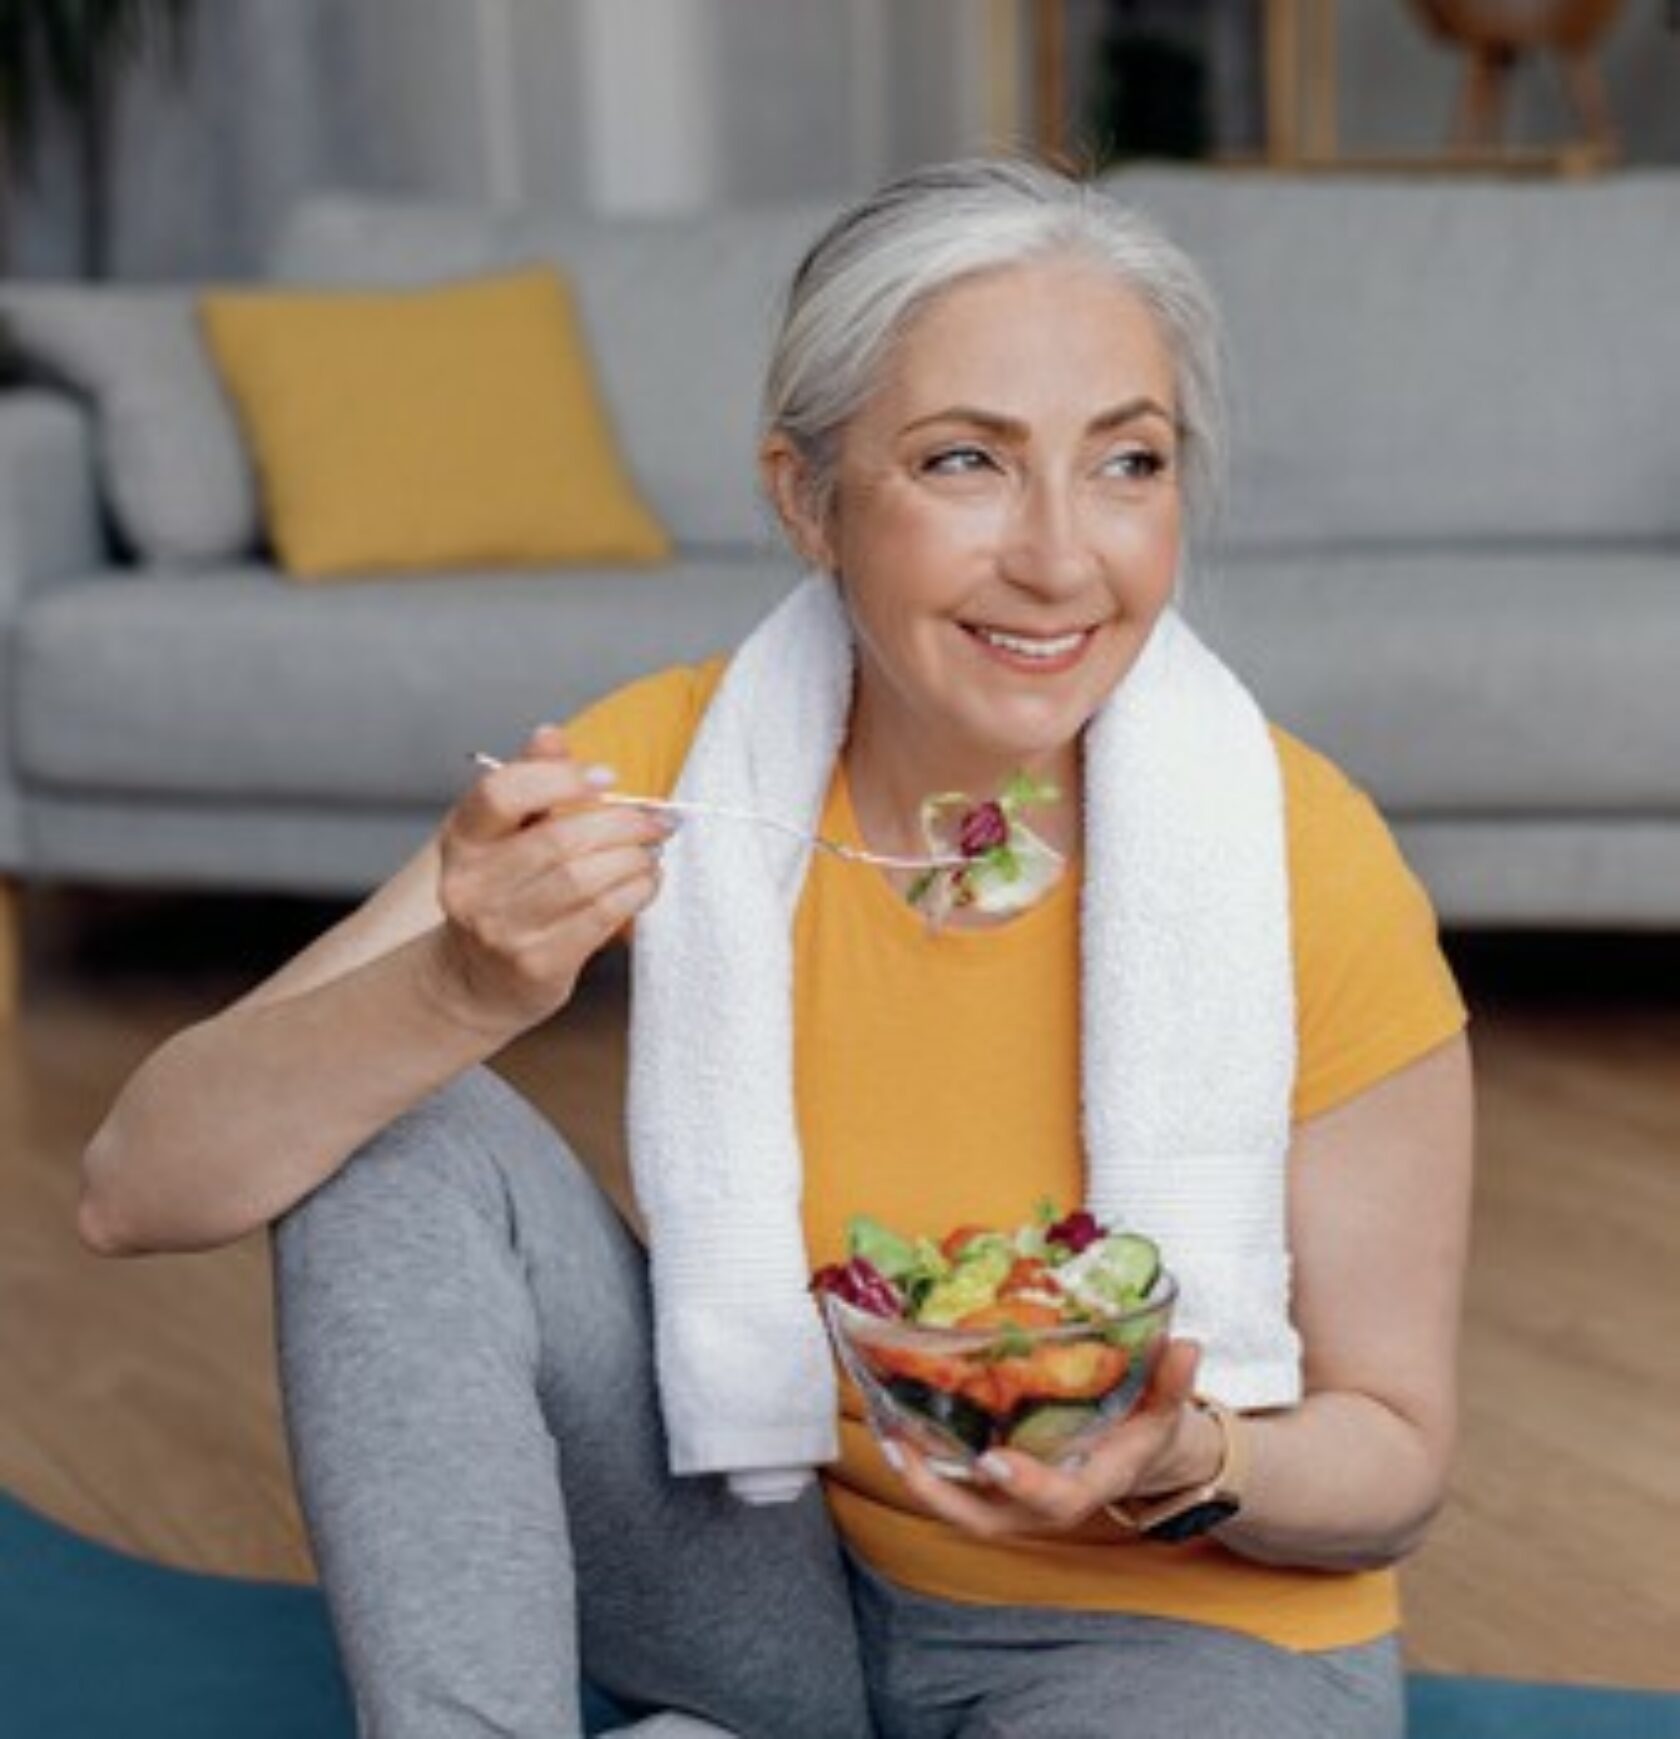 Grauhaarige Frau isst nach dem Training einen Salat. Sie hat noch ein Handtuch um die Schultern und Sportkleidung an.